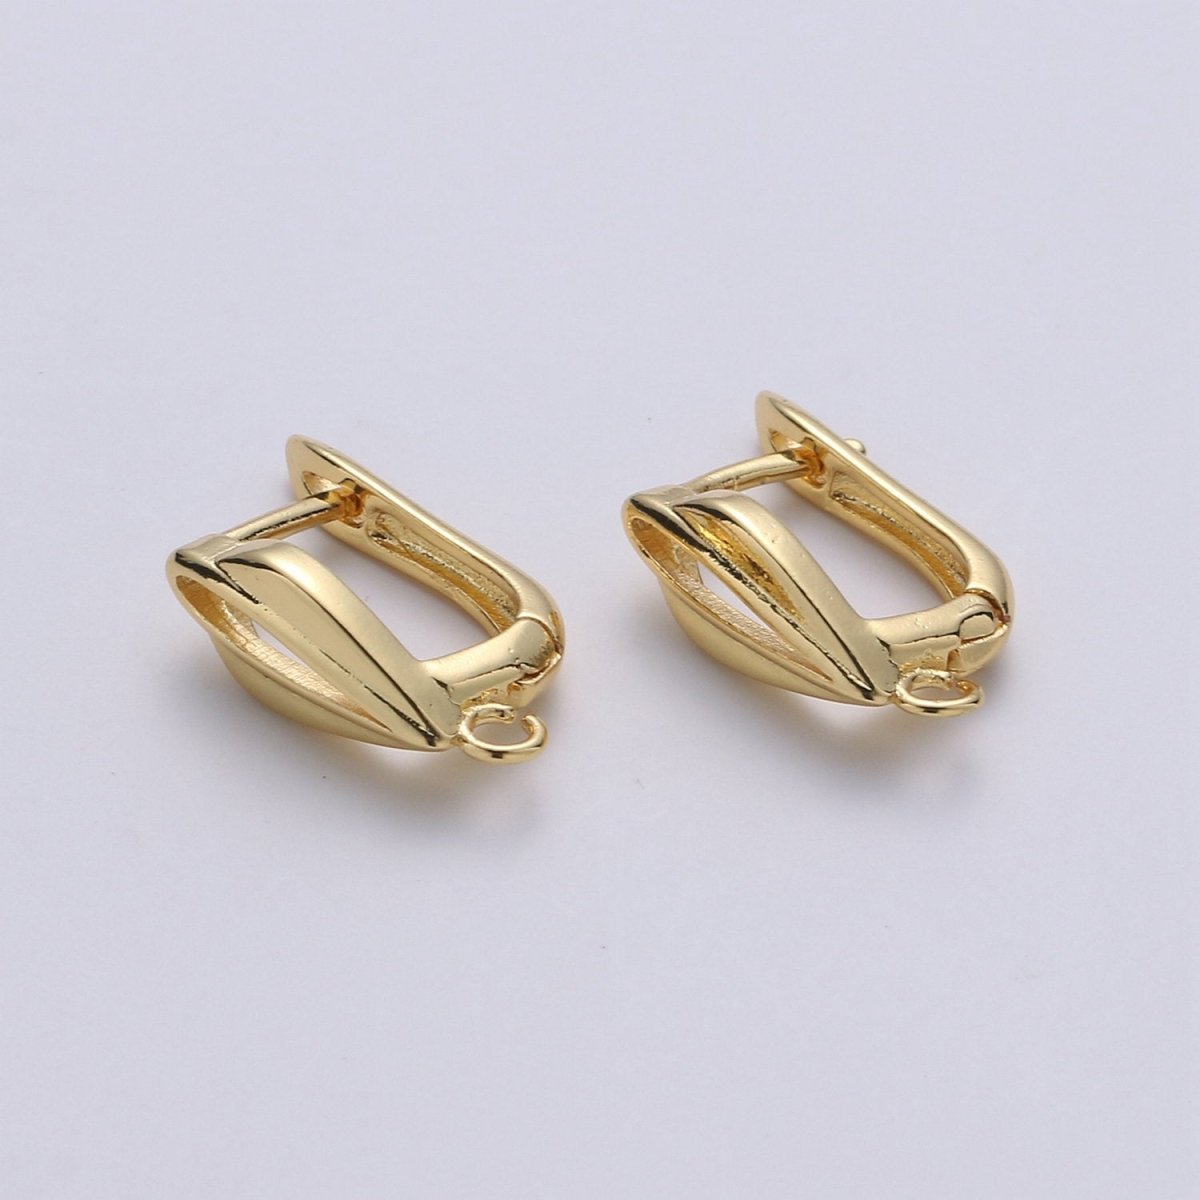 24k Vermeil Gold Earrings, Open Link, Latch Back Earring, Leaf Earrings, DIY Earrings, Everyday Wear Earrings, Rosegold Earring, K-678 - K-680 - DLUXCA